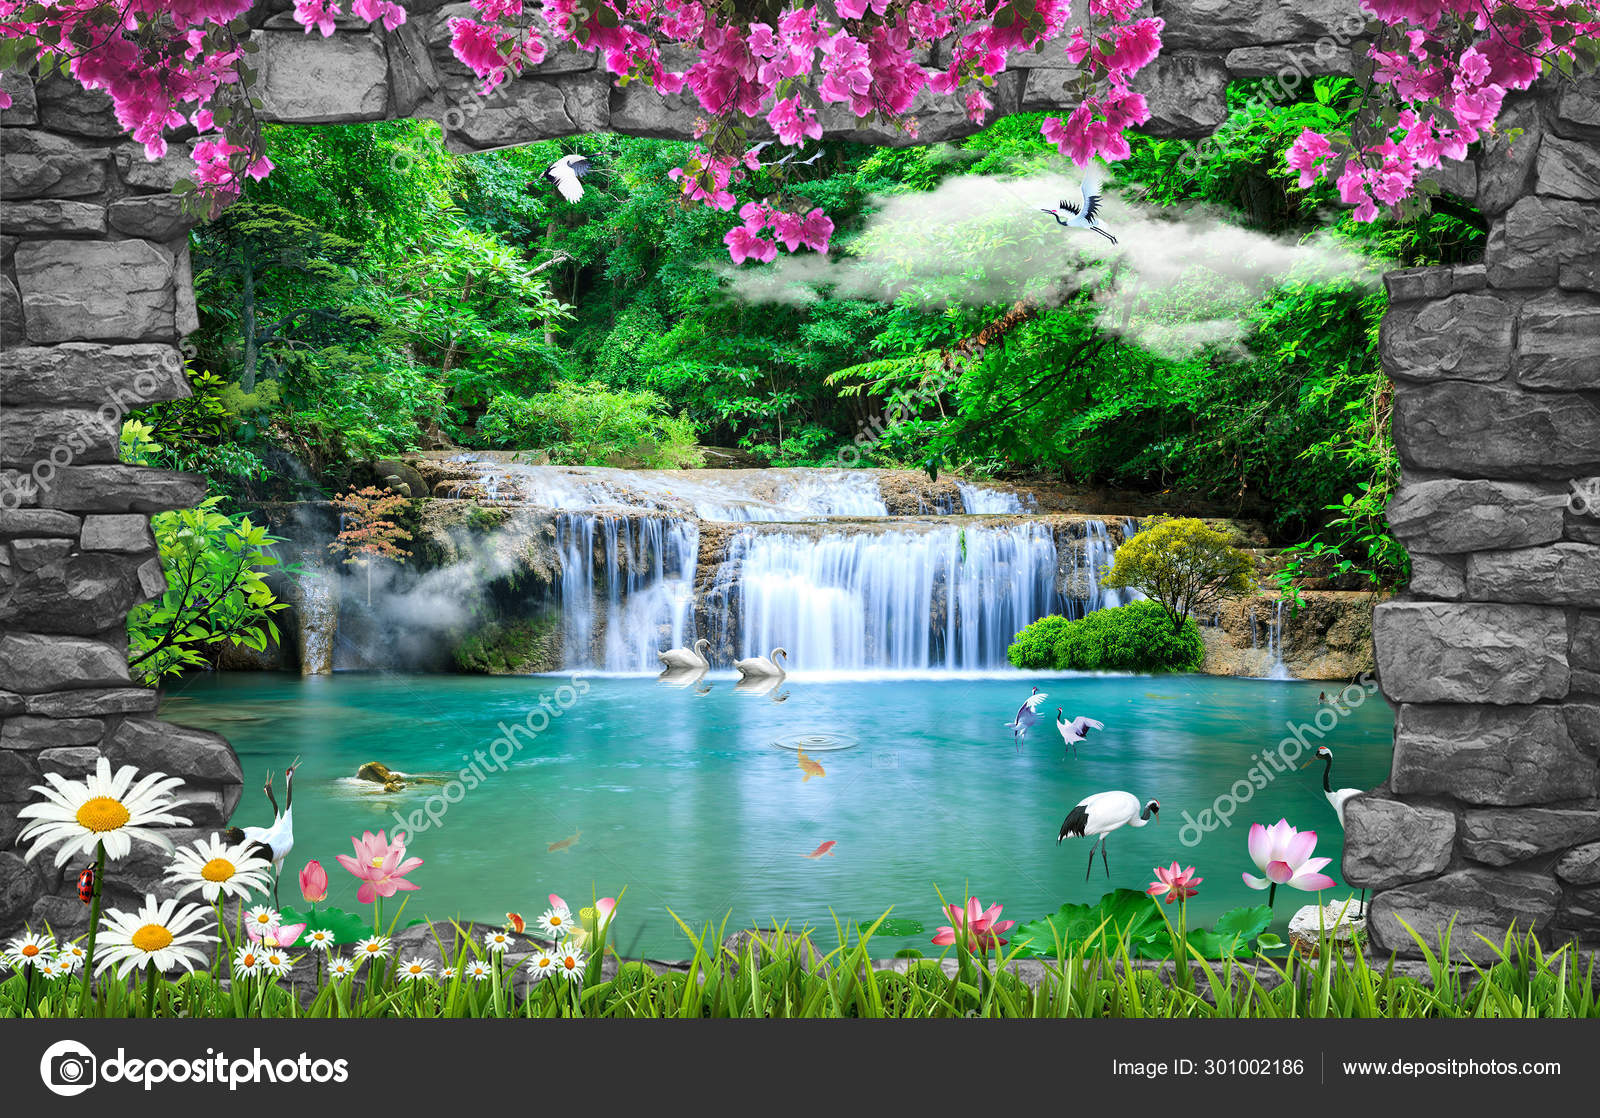 Amazing Nature Background Wallpaper Stock Photo by ©Zevahir 301002186